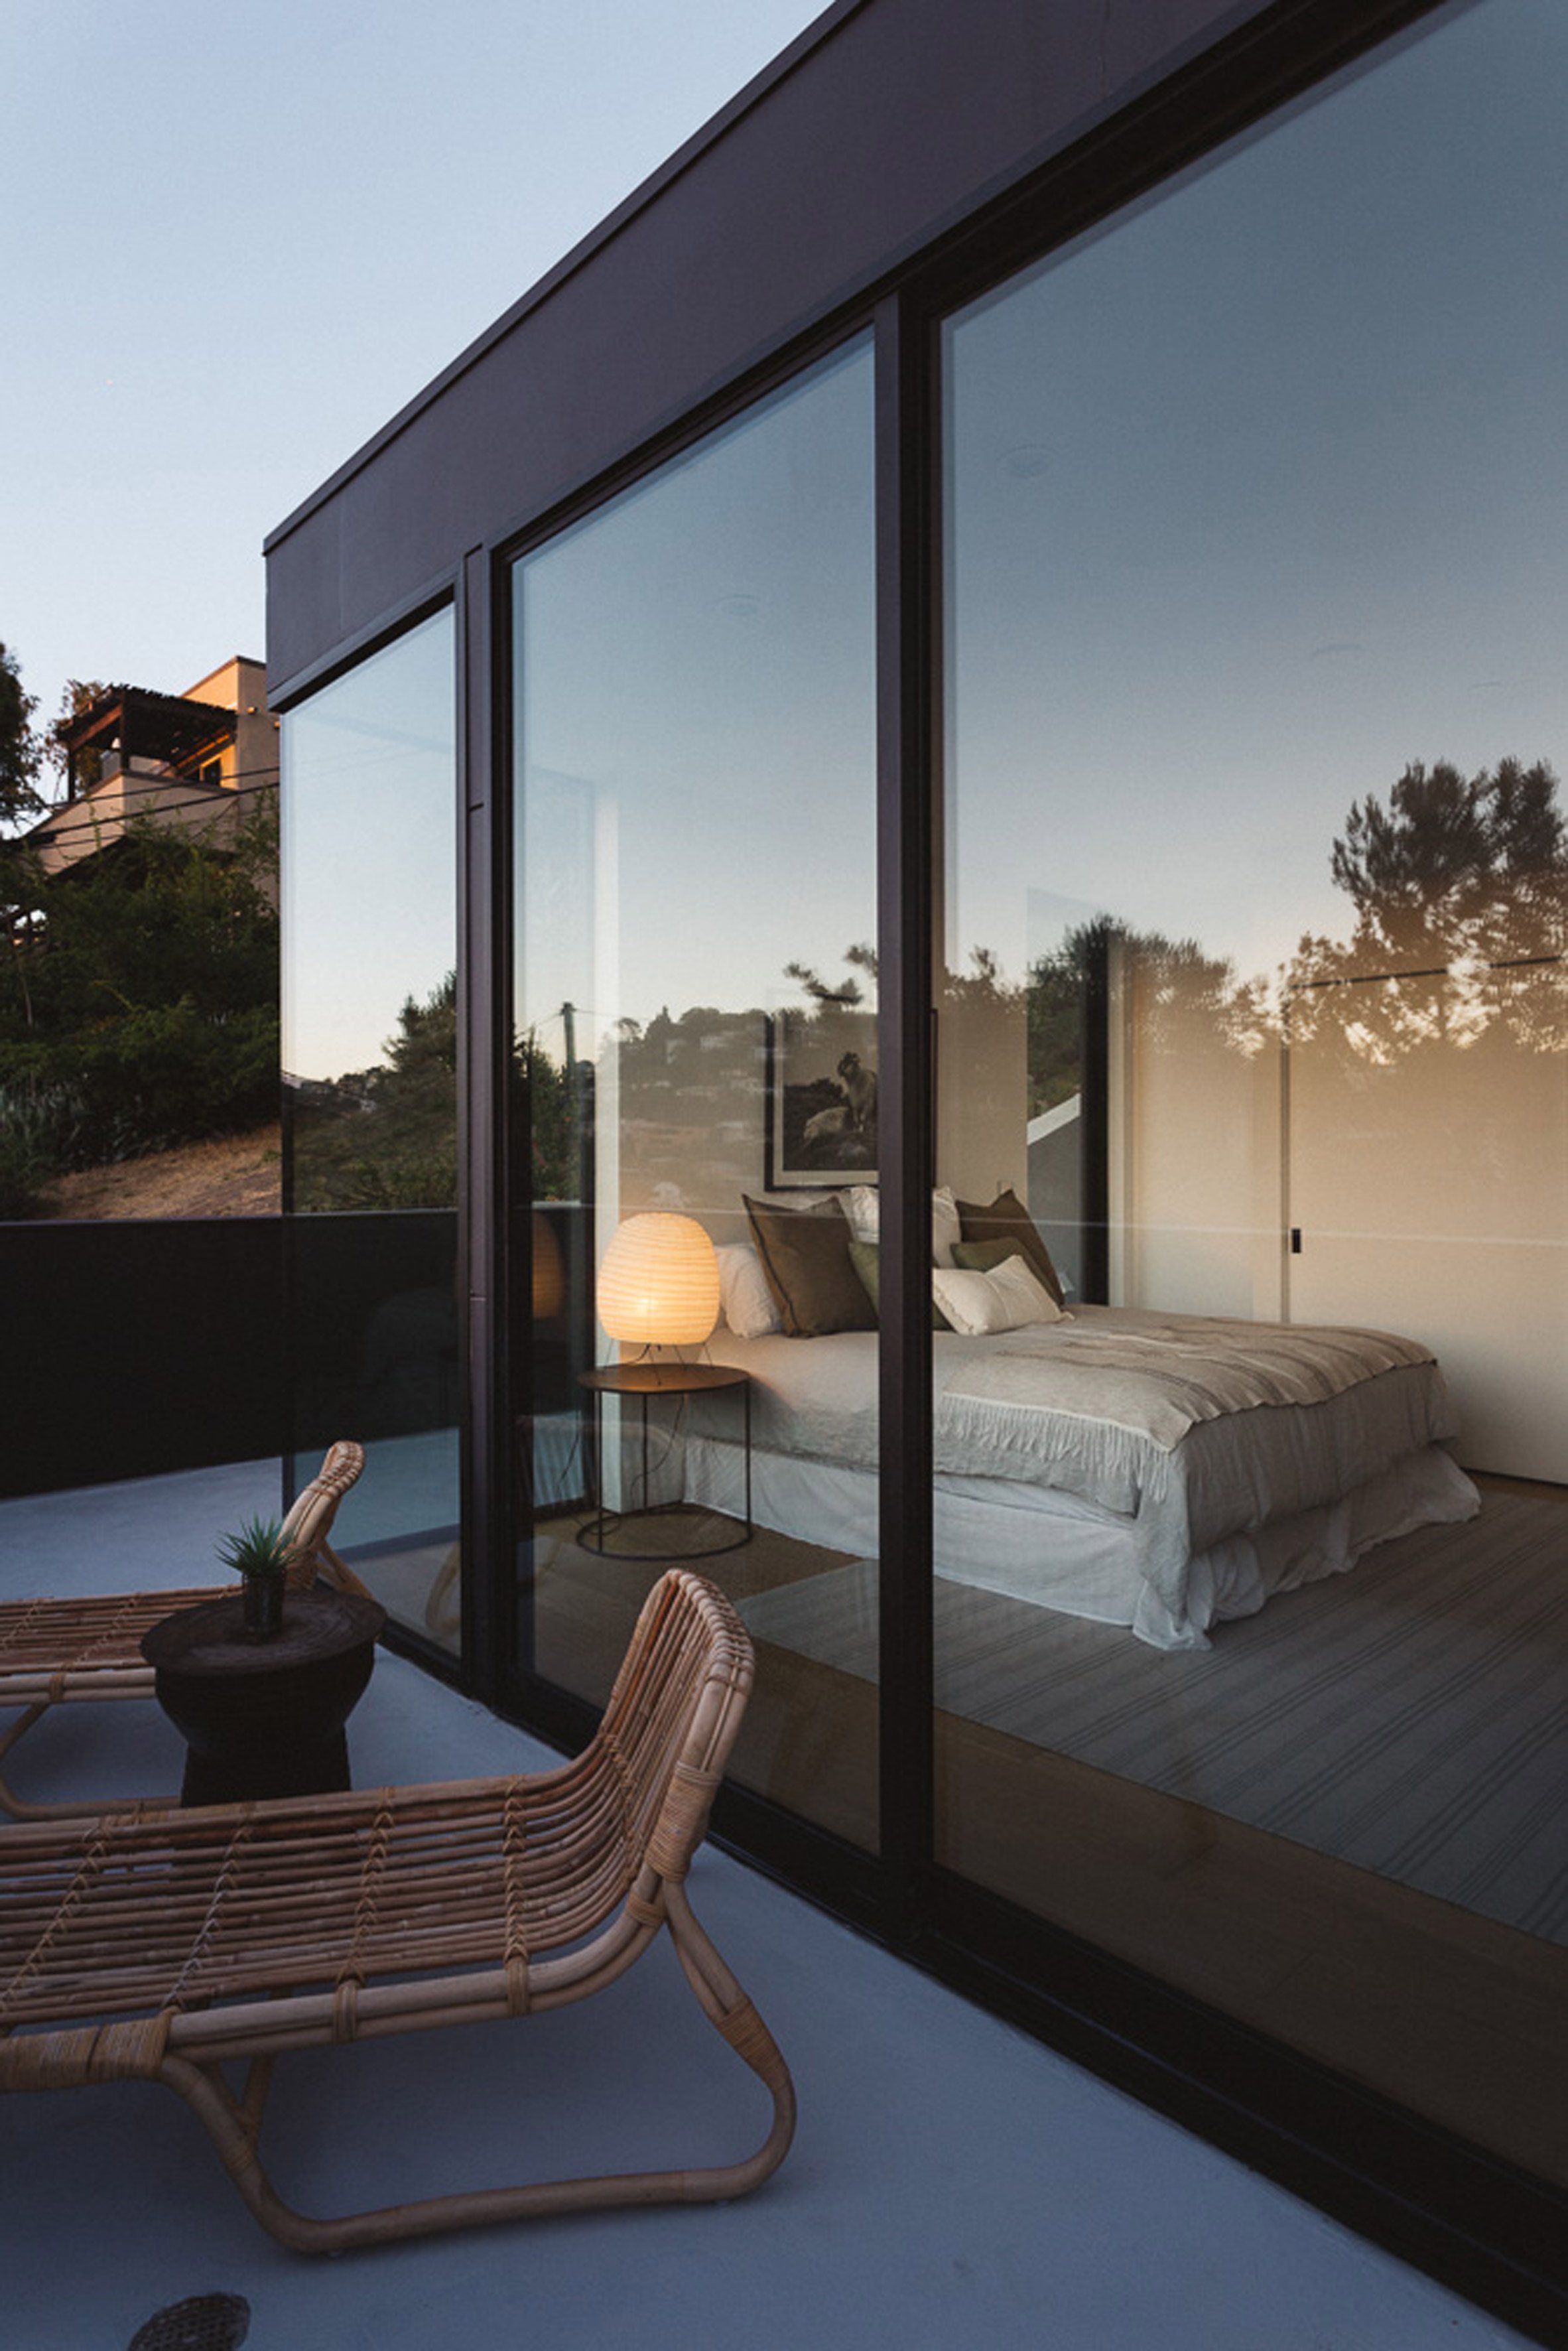 13 gợi ý thiết kế tường kính cho phòng ngủ để hưởng trọn tầm nhìn tuyệt đẹp bên ngoài - Ảnh 5.